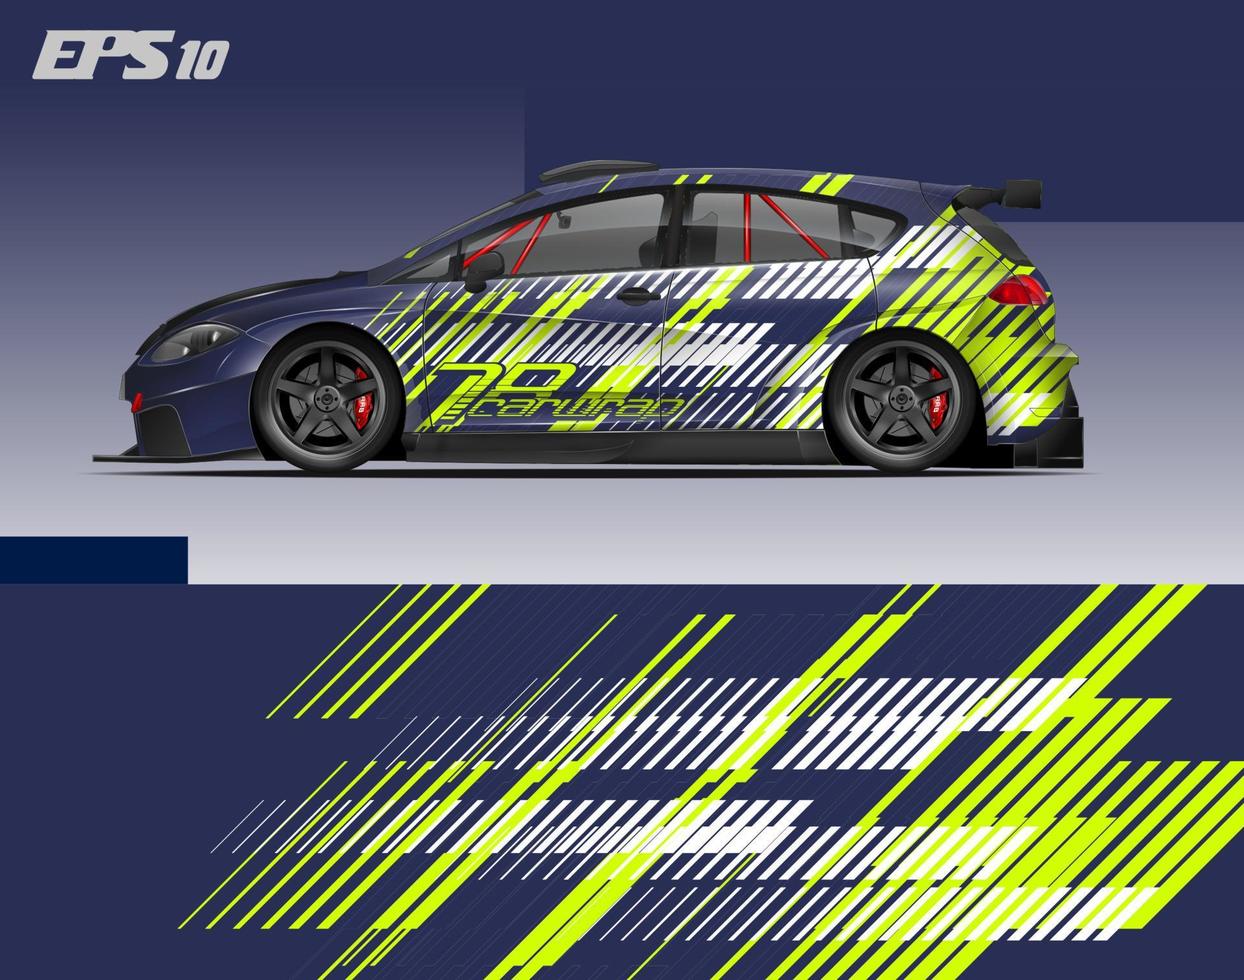 abstraktes Car Wrap Design modernes Rennhintergrunddesign für Fahrzeugfolierung, Rennwagen, Rallye usw vektor